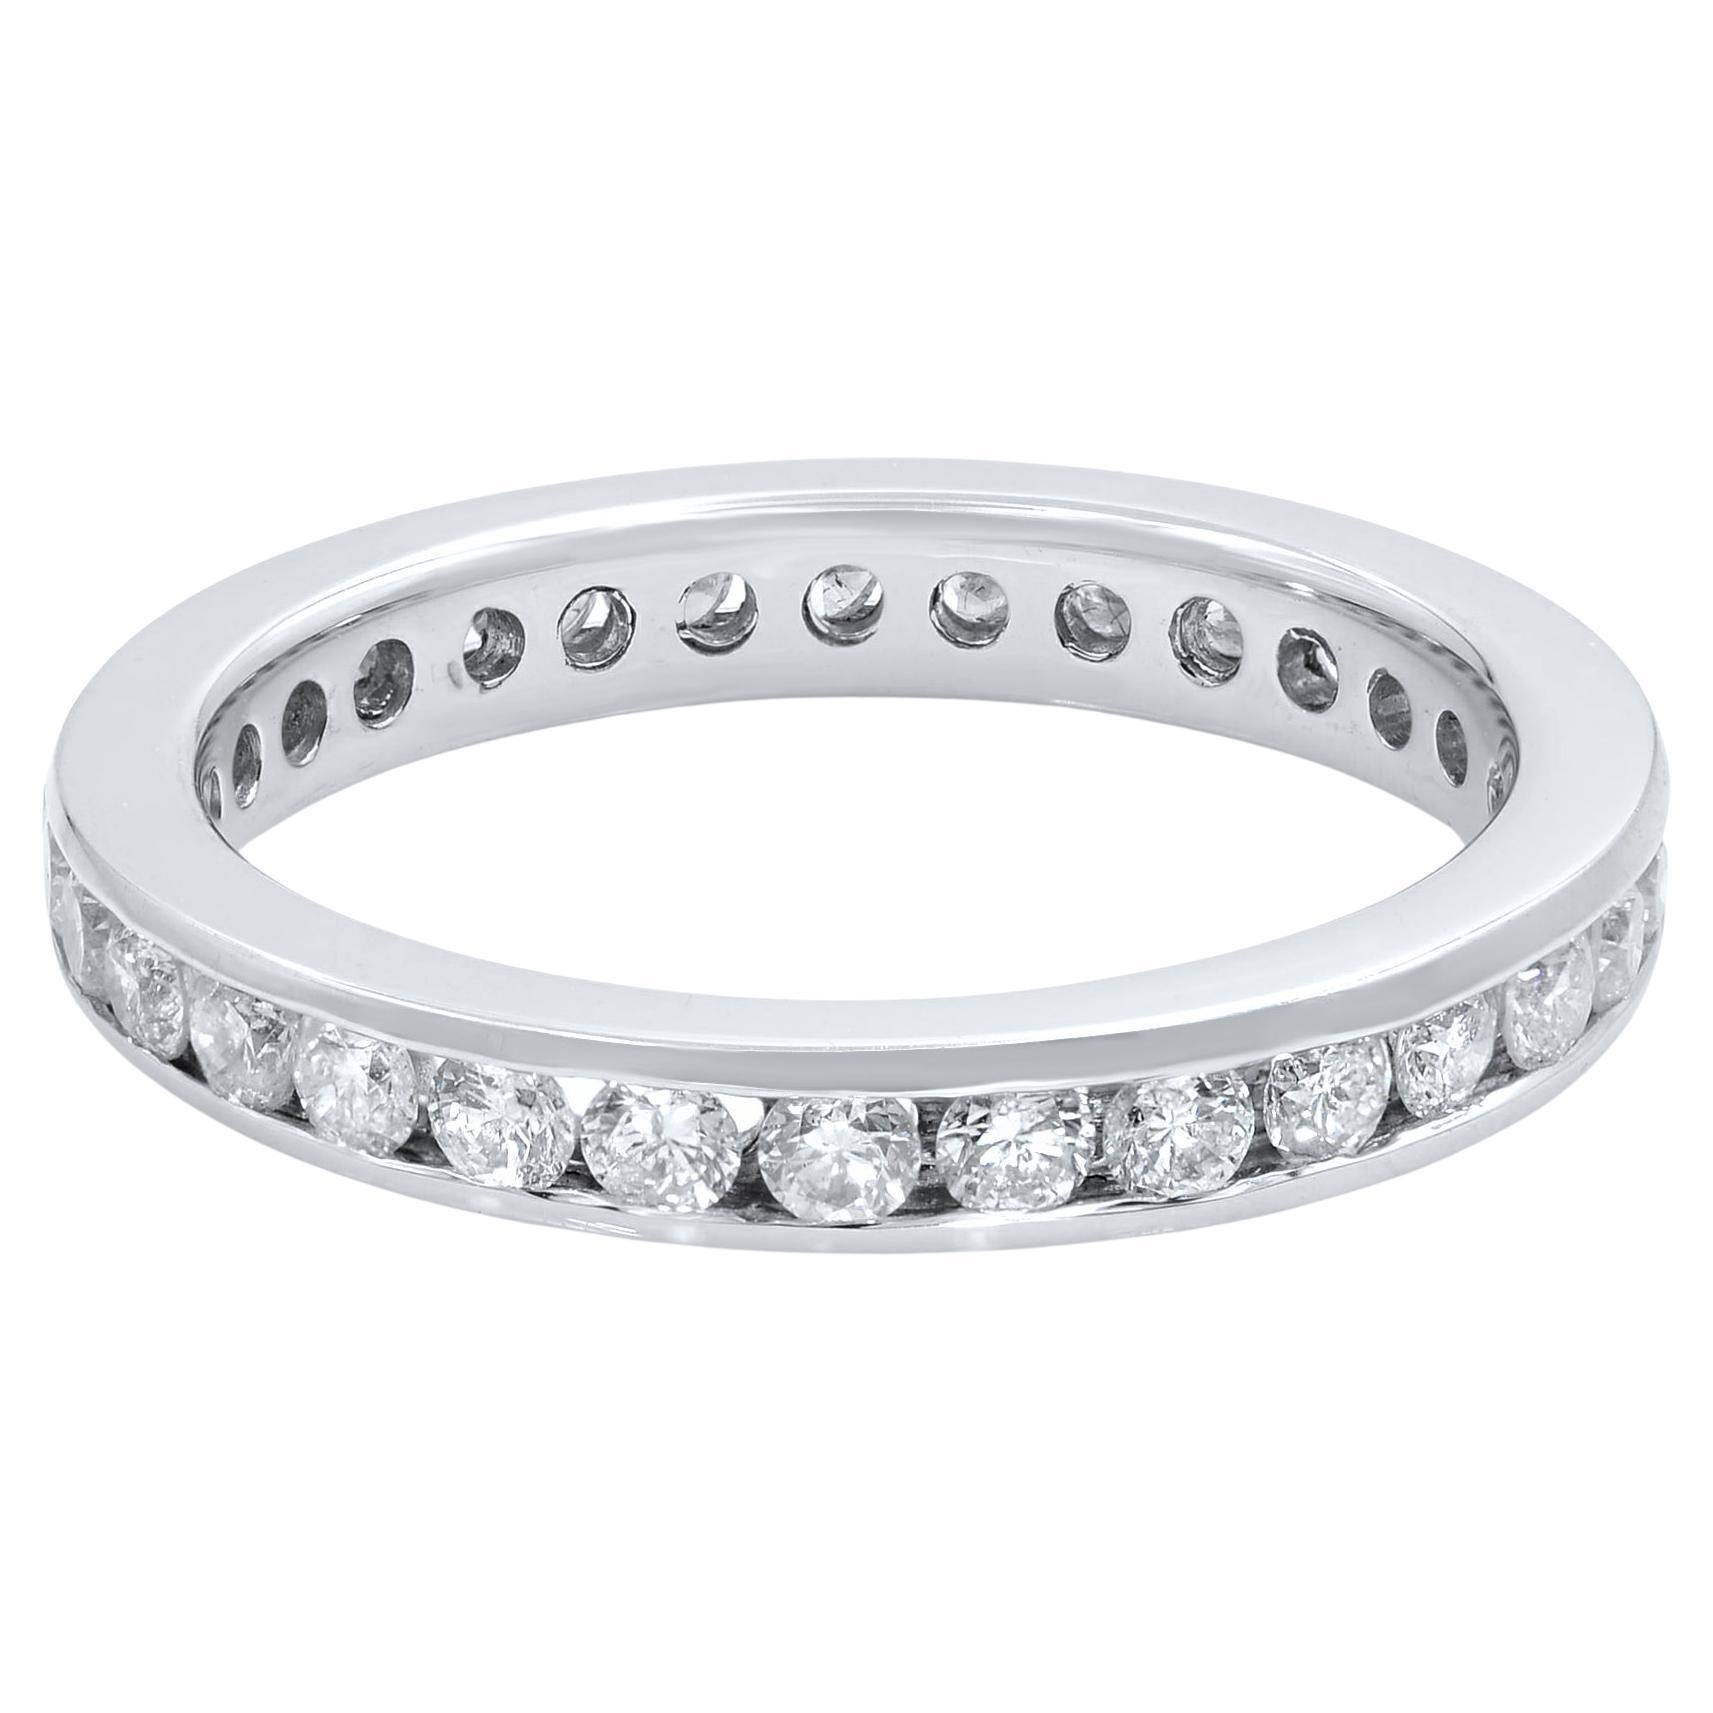 Rachel Koen Wedding Anniversary Ring Band 14K White Gold 0.60cttw For Sale